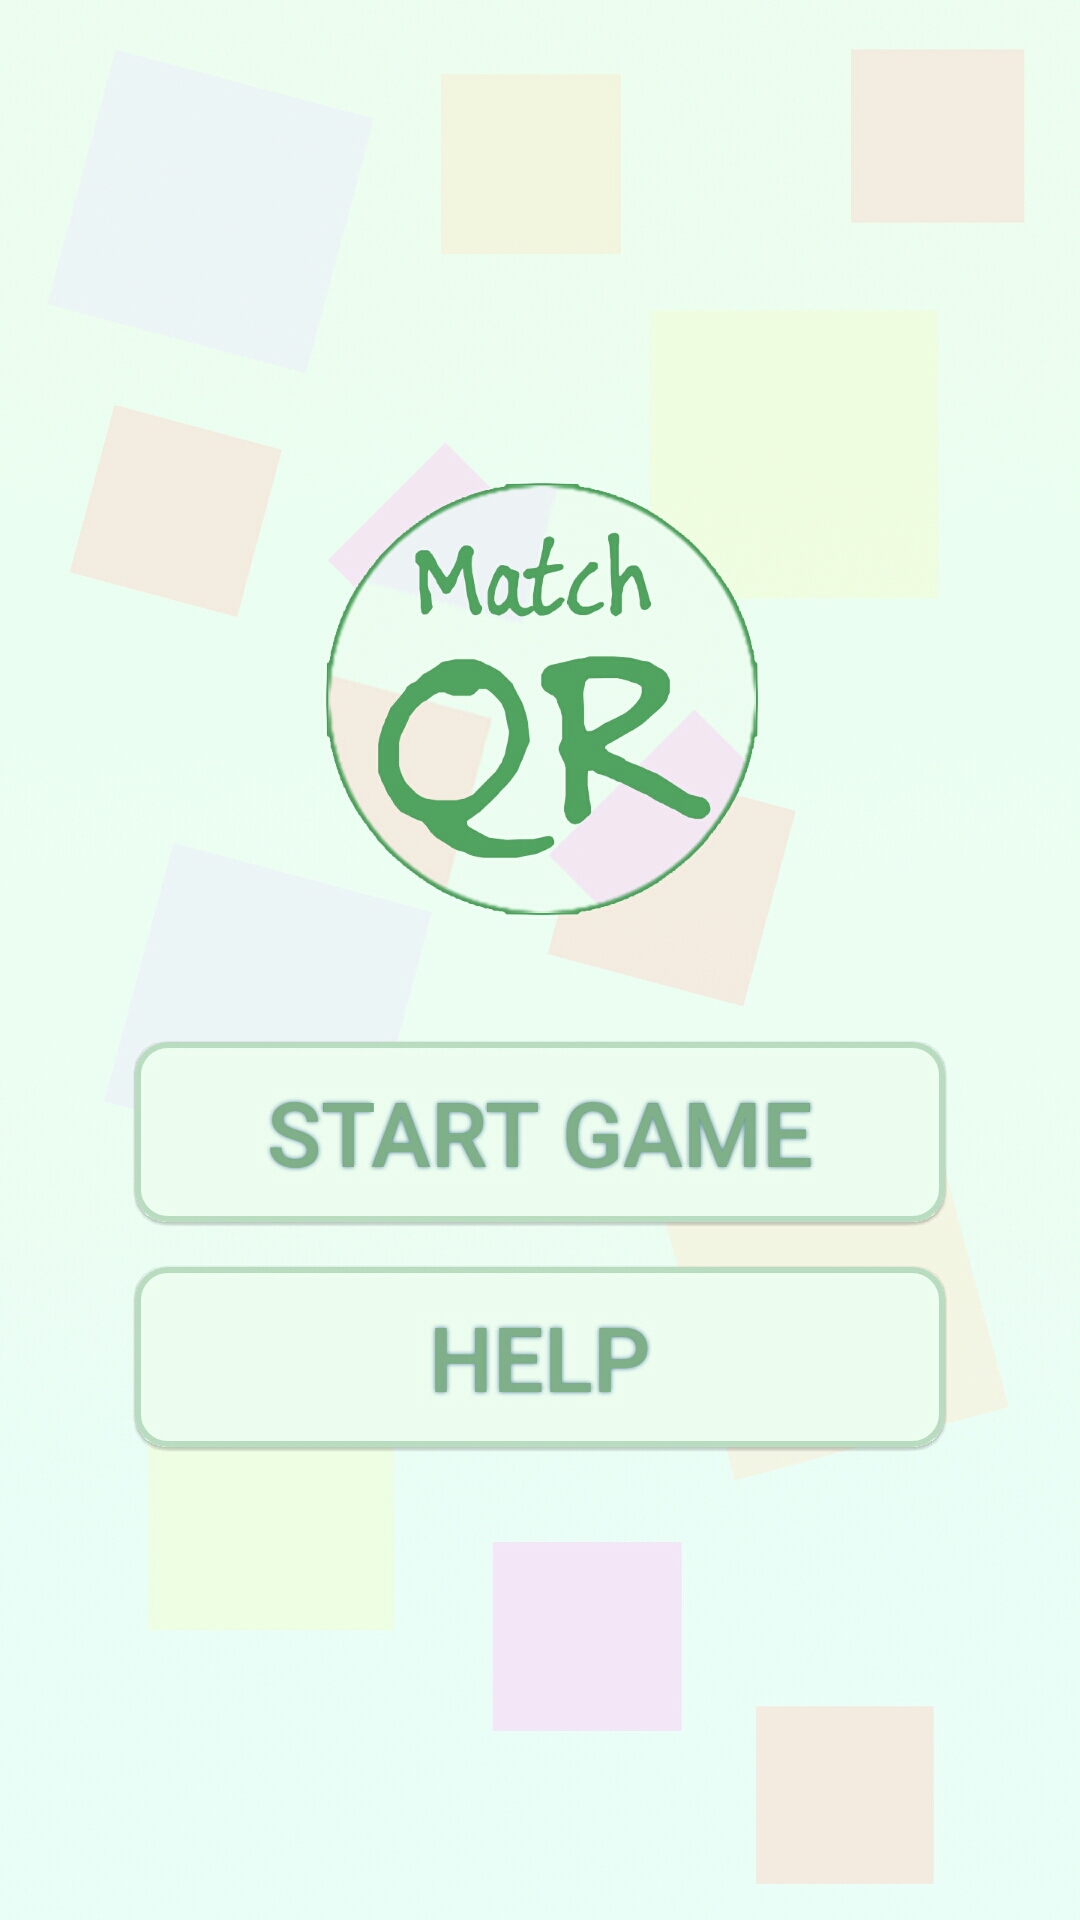 Match QR game